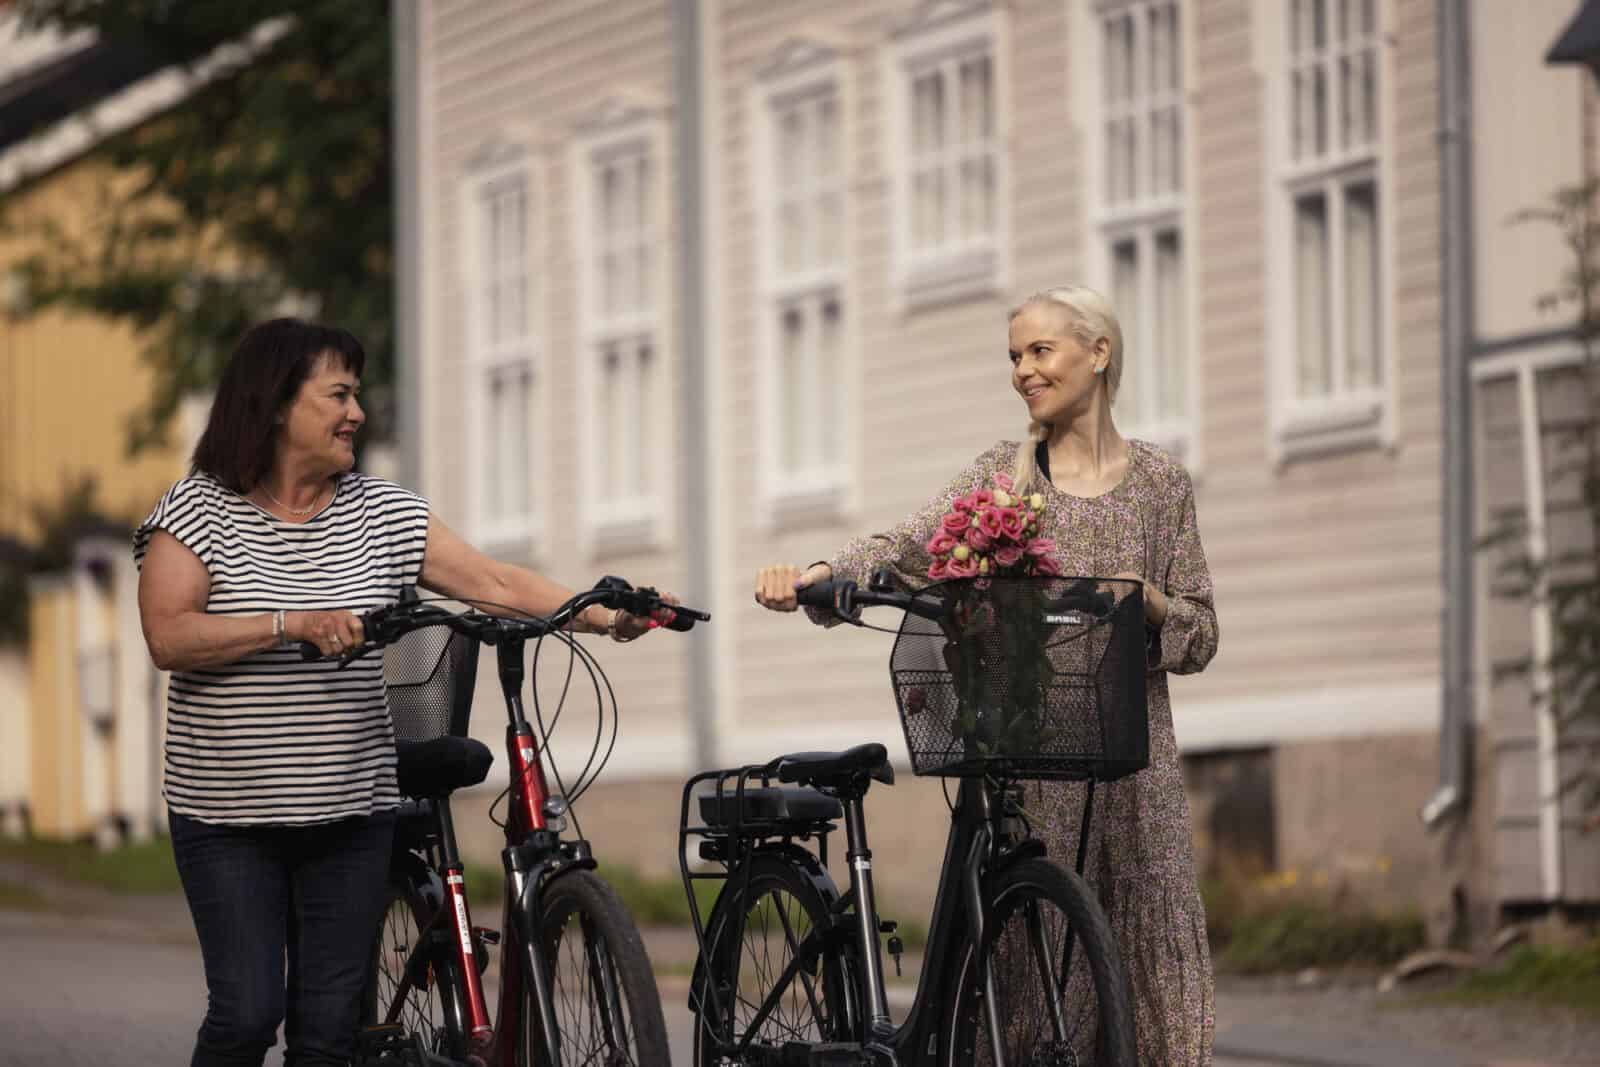 Kaksi naista taluttaa pyöriä. Toisen pyörän korissa on kukkia. Naiset hymyilevät, taustalla näkyy vaaleanpunainen puutalo.